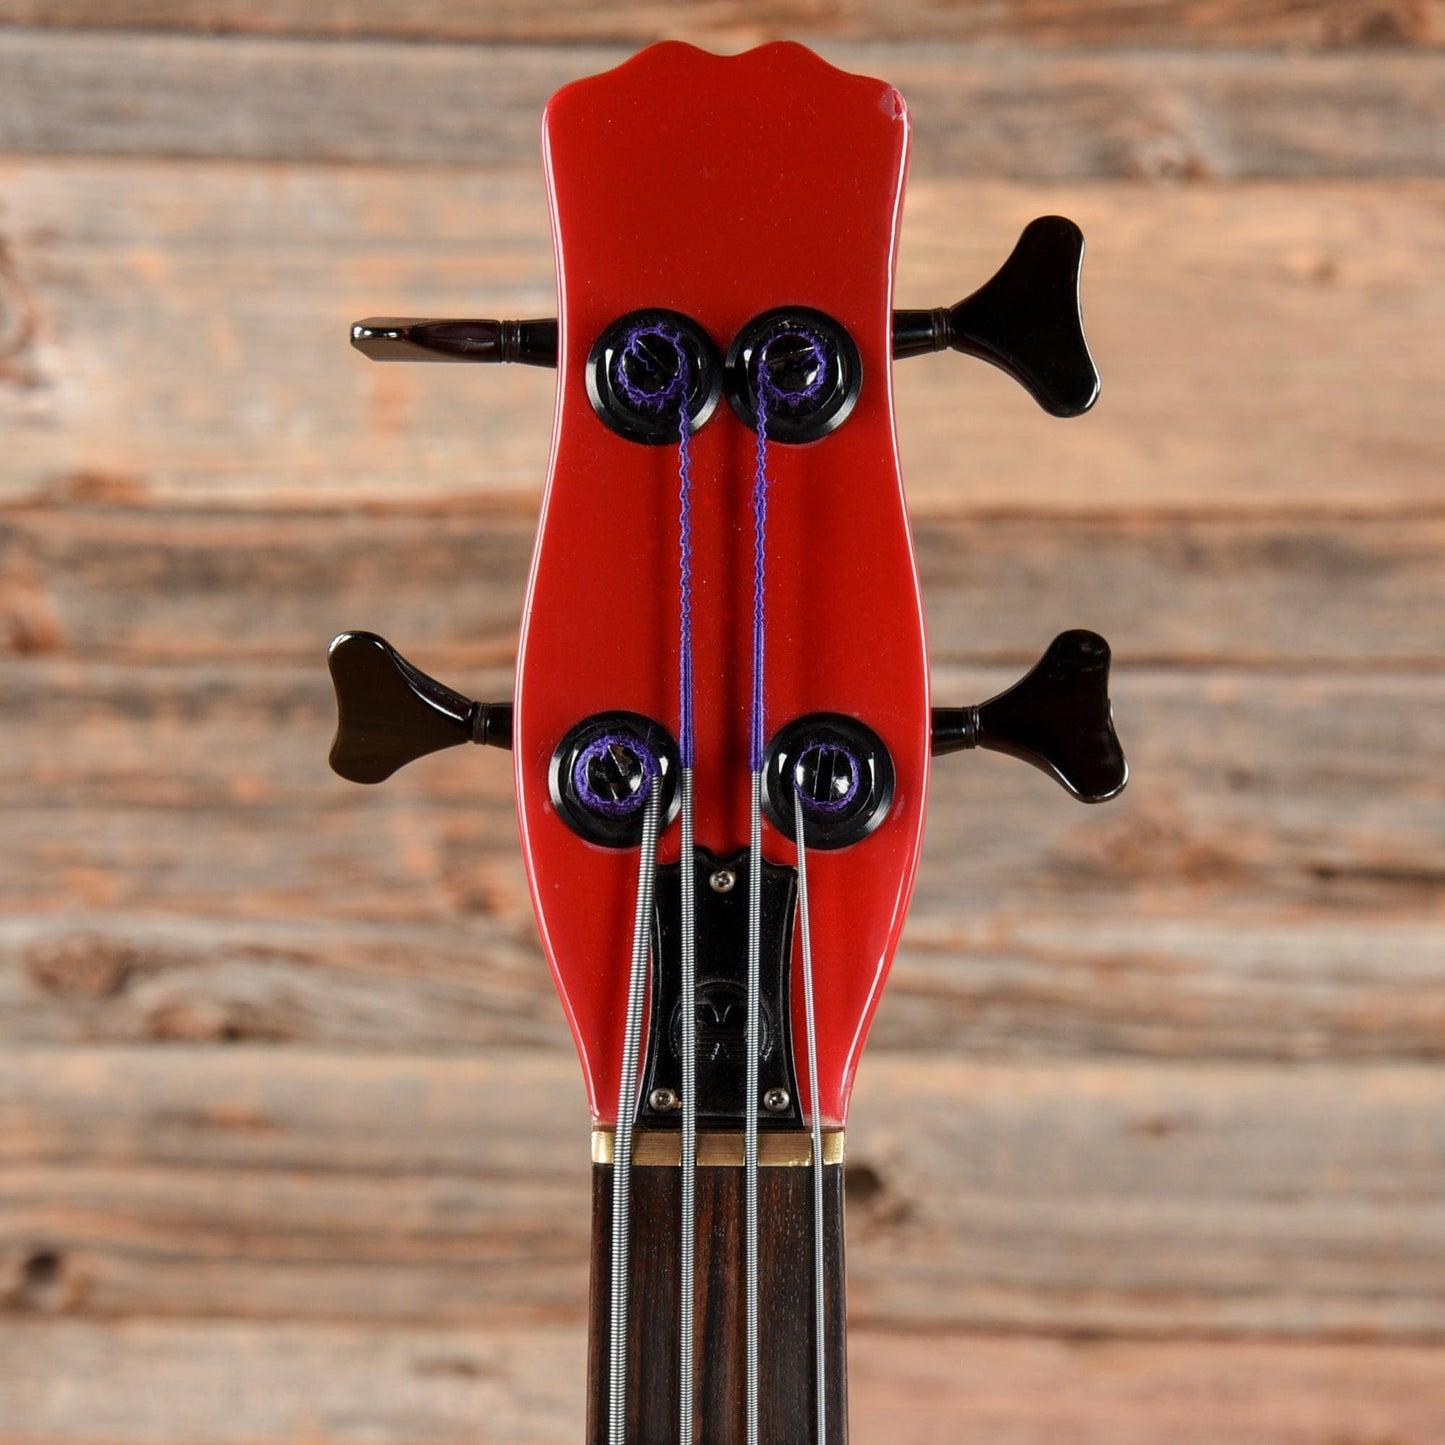 Hondo Long Horn Long Scale Bass Red Refin Bass Guitars / 4-String